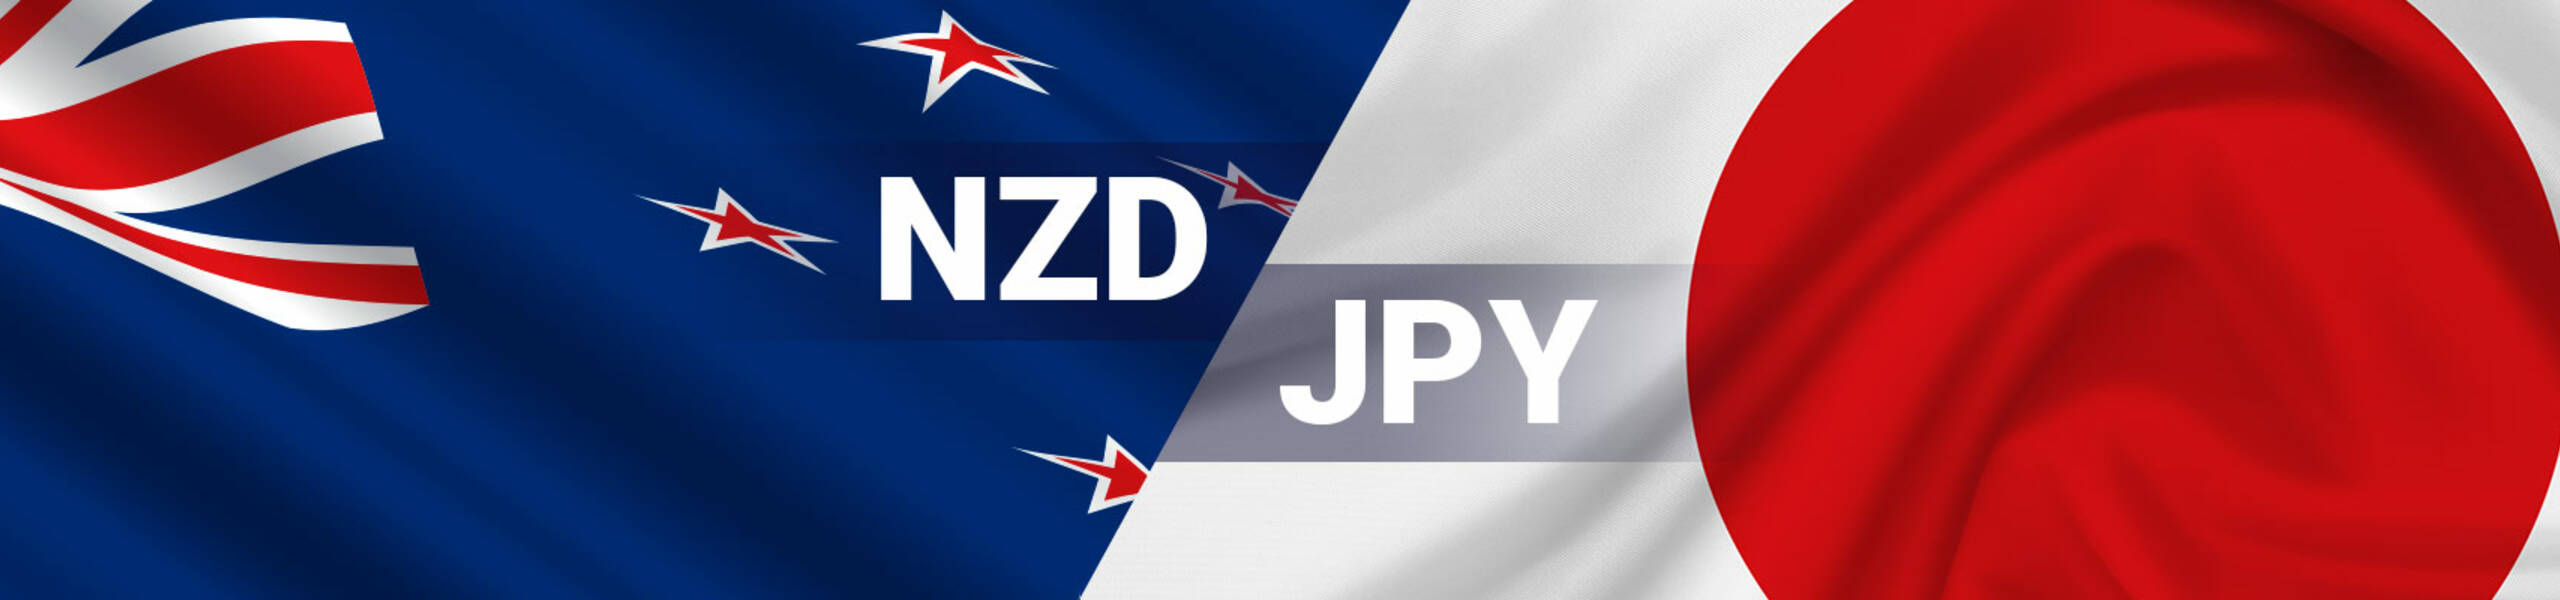 NZD/JPY テクニカル分析 2018/01/09